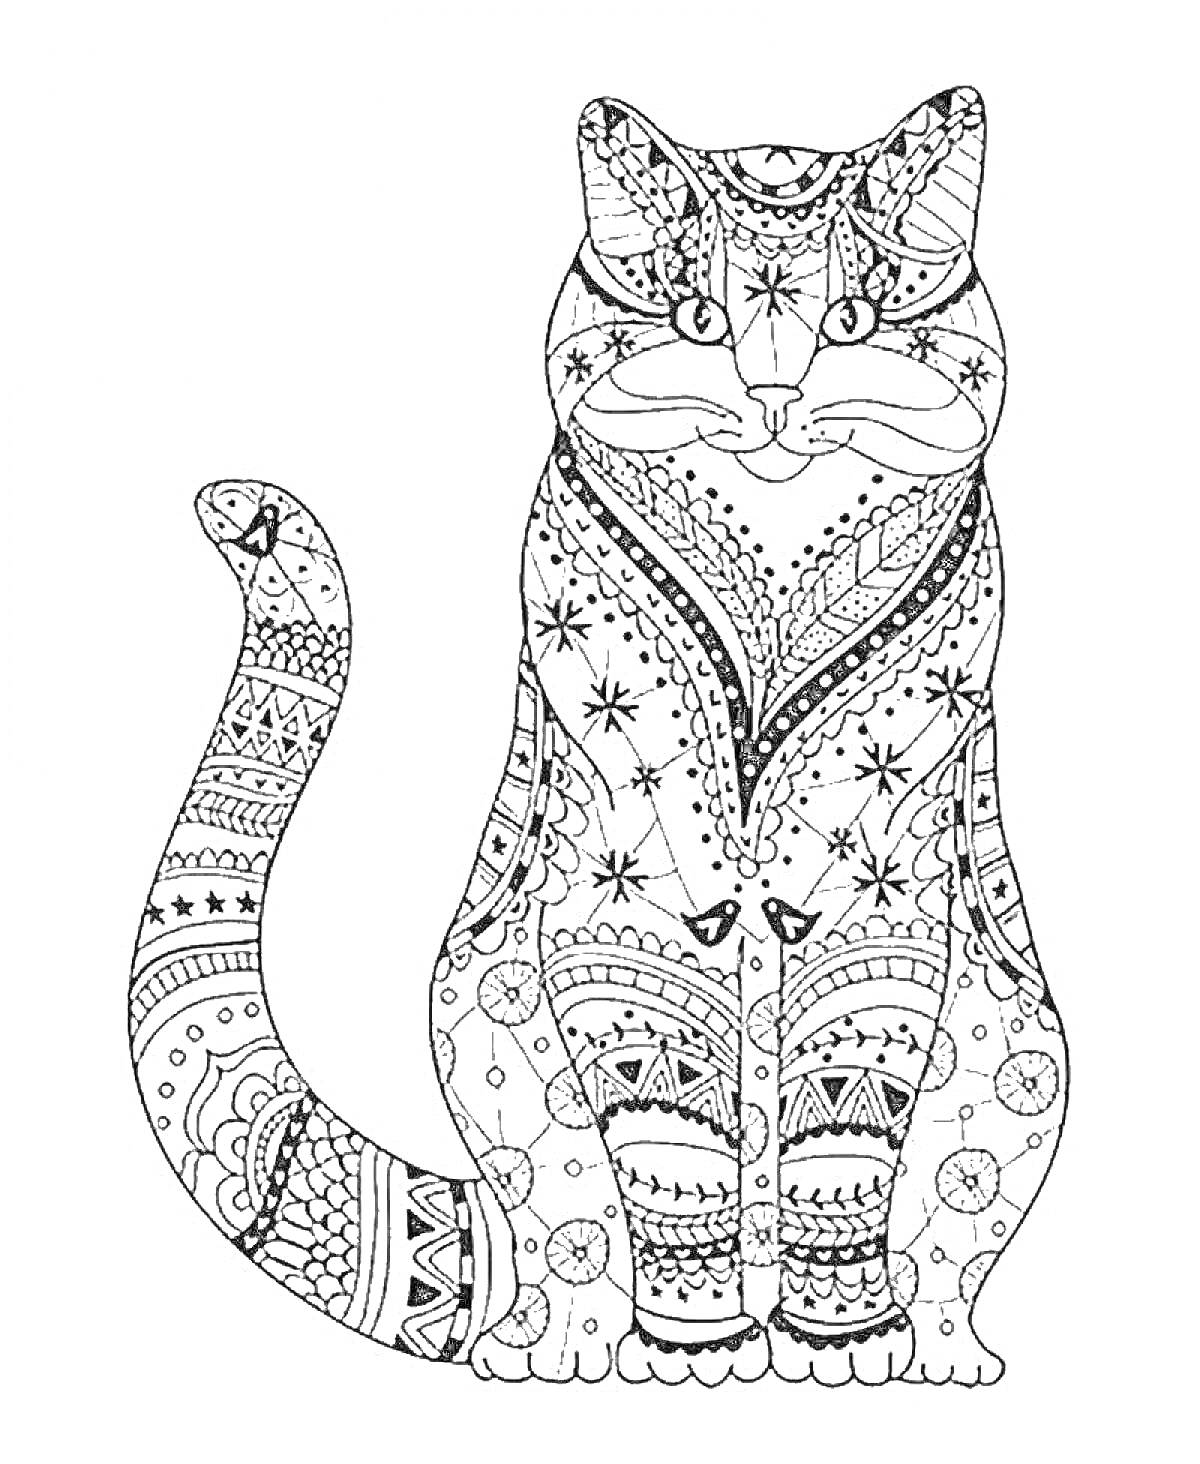 РаскраскаАнтистресс раскраска с сидящей кошкой, украшенной детализированными узорами и орнаментами